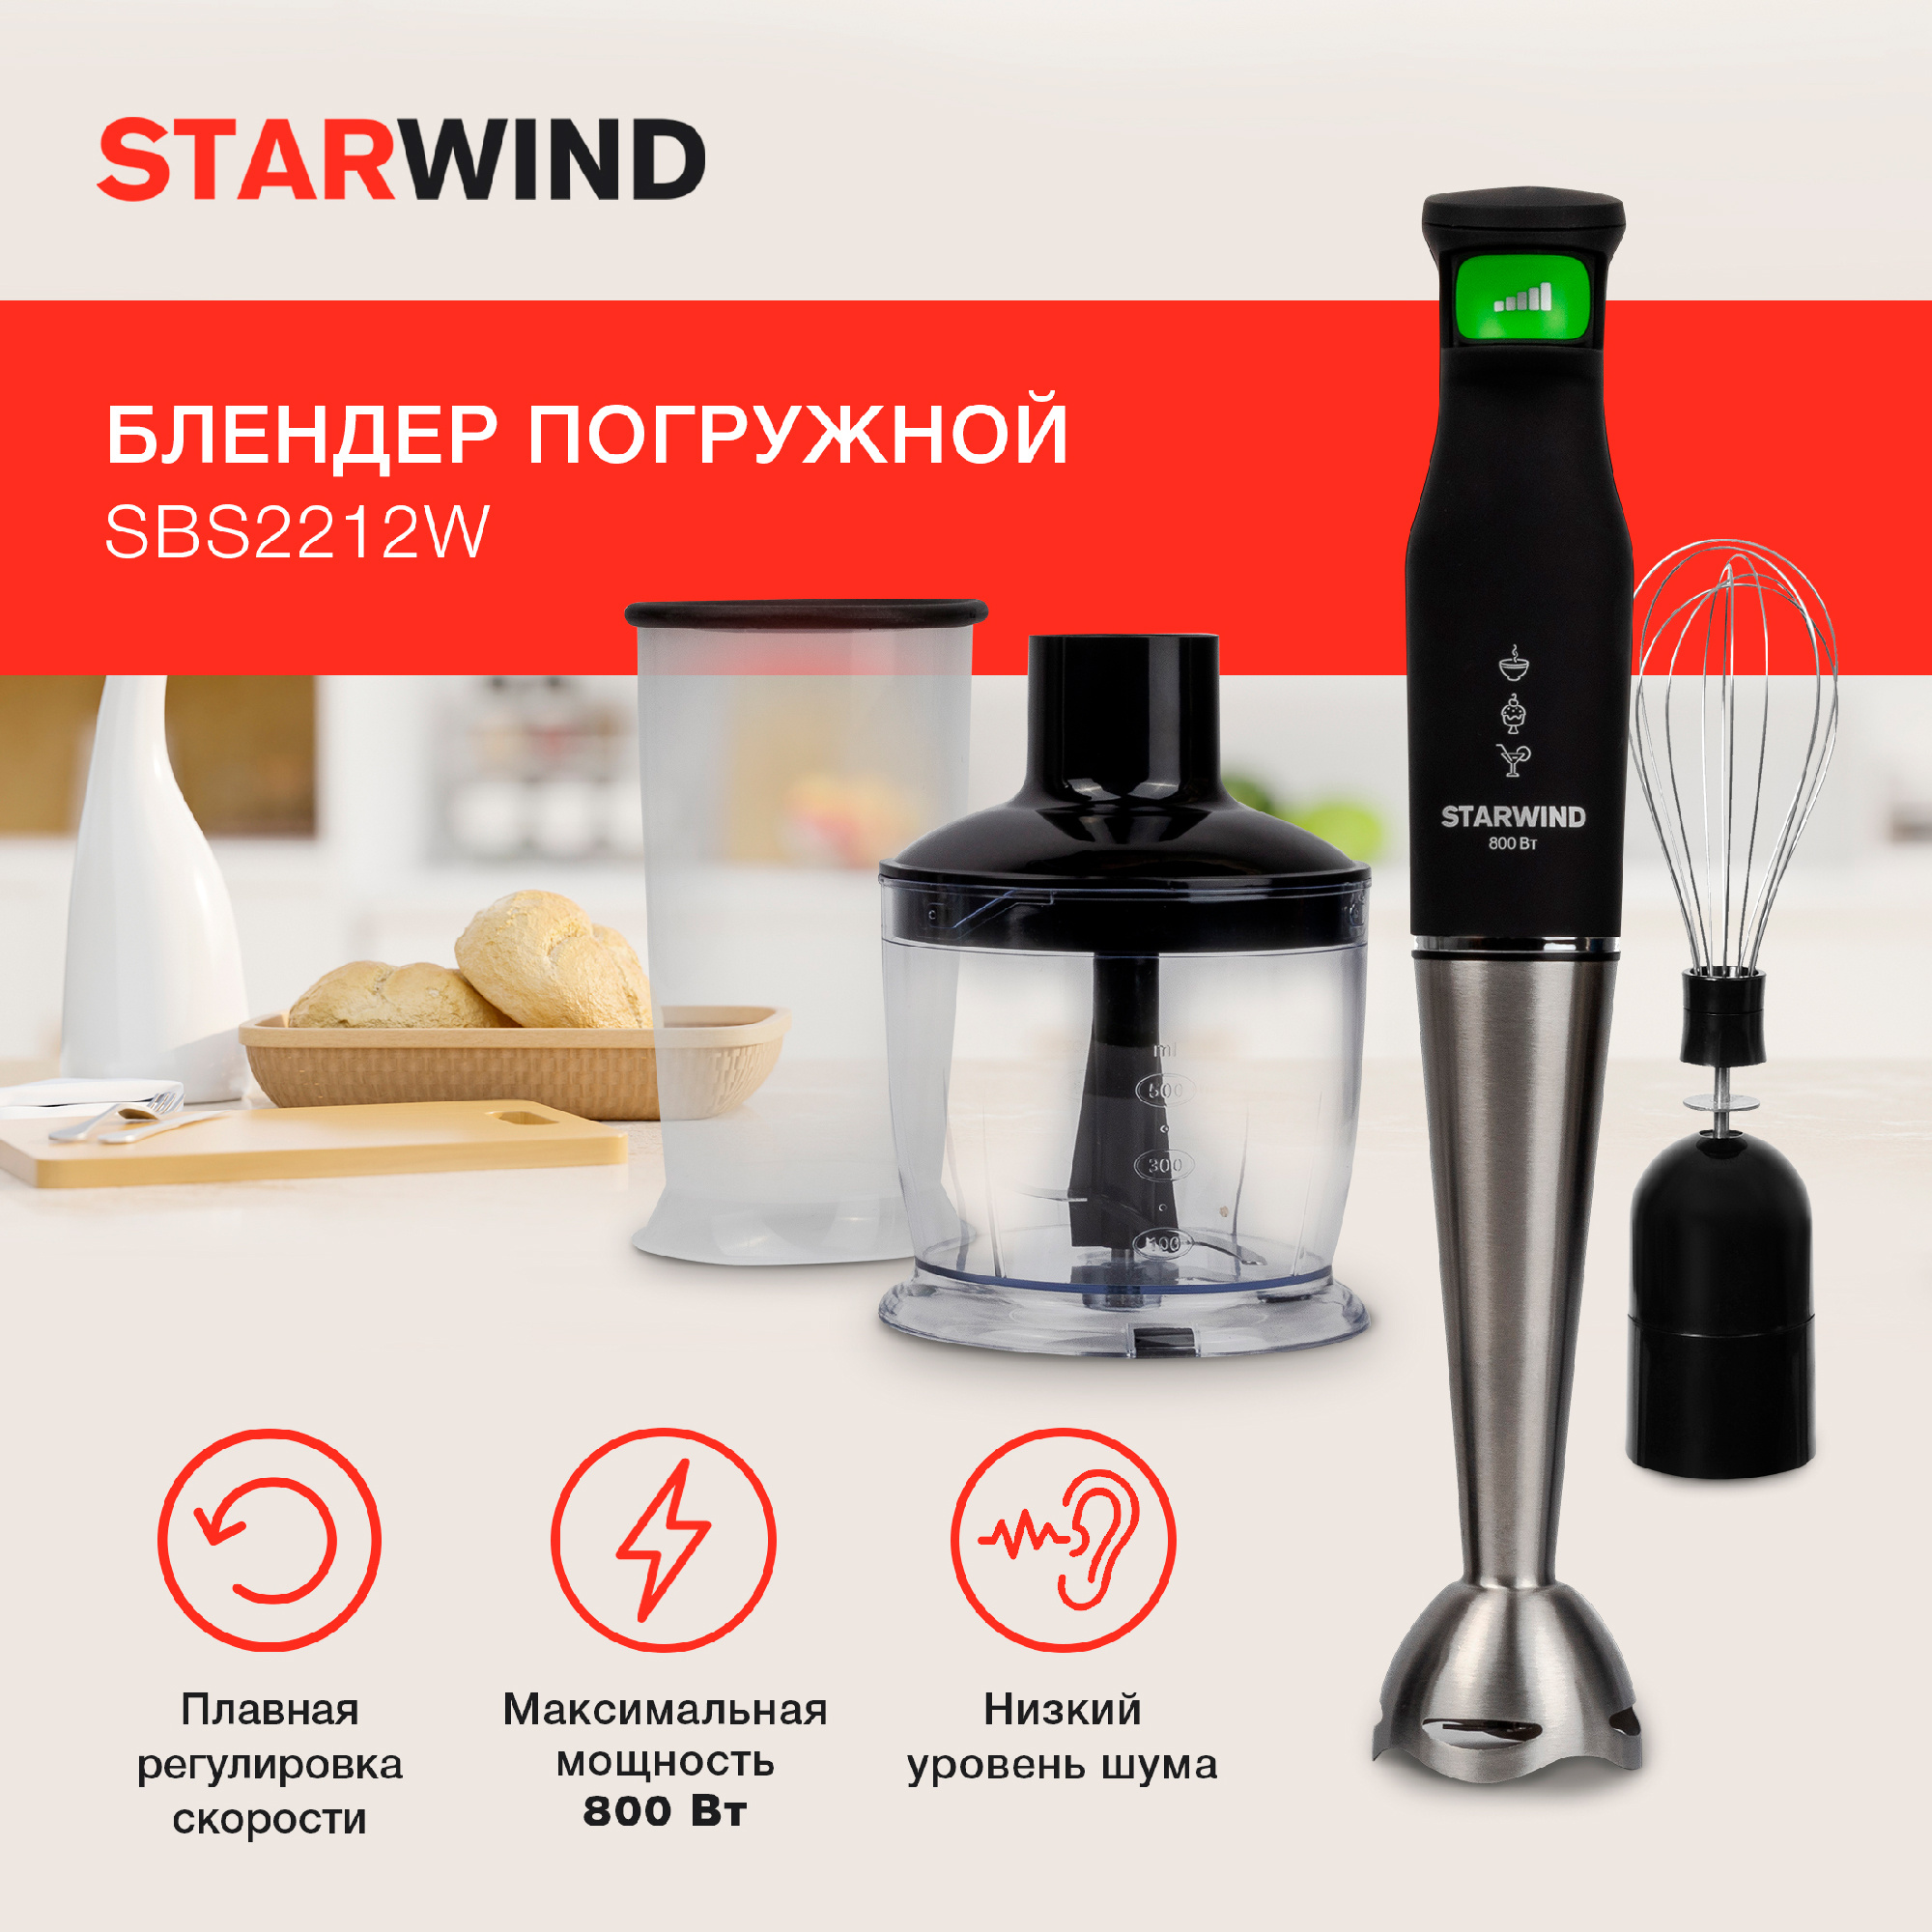 Блендер погружной Starwind SBS2212w черный/зеленый от магазина Старвинд